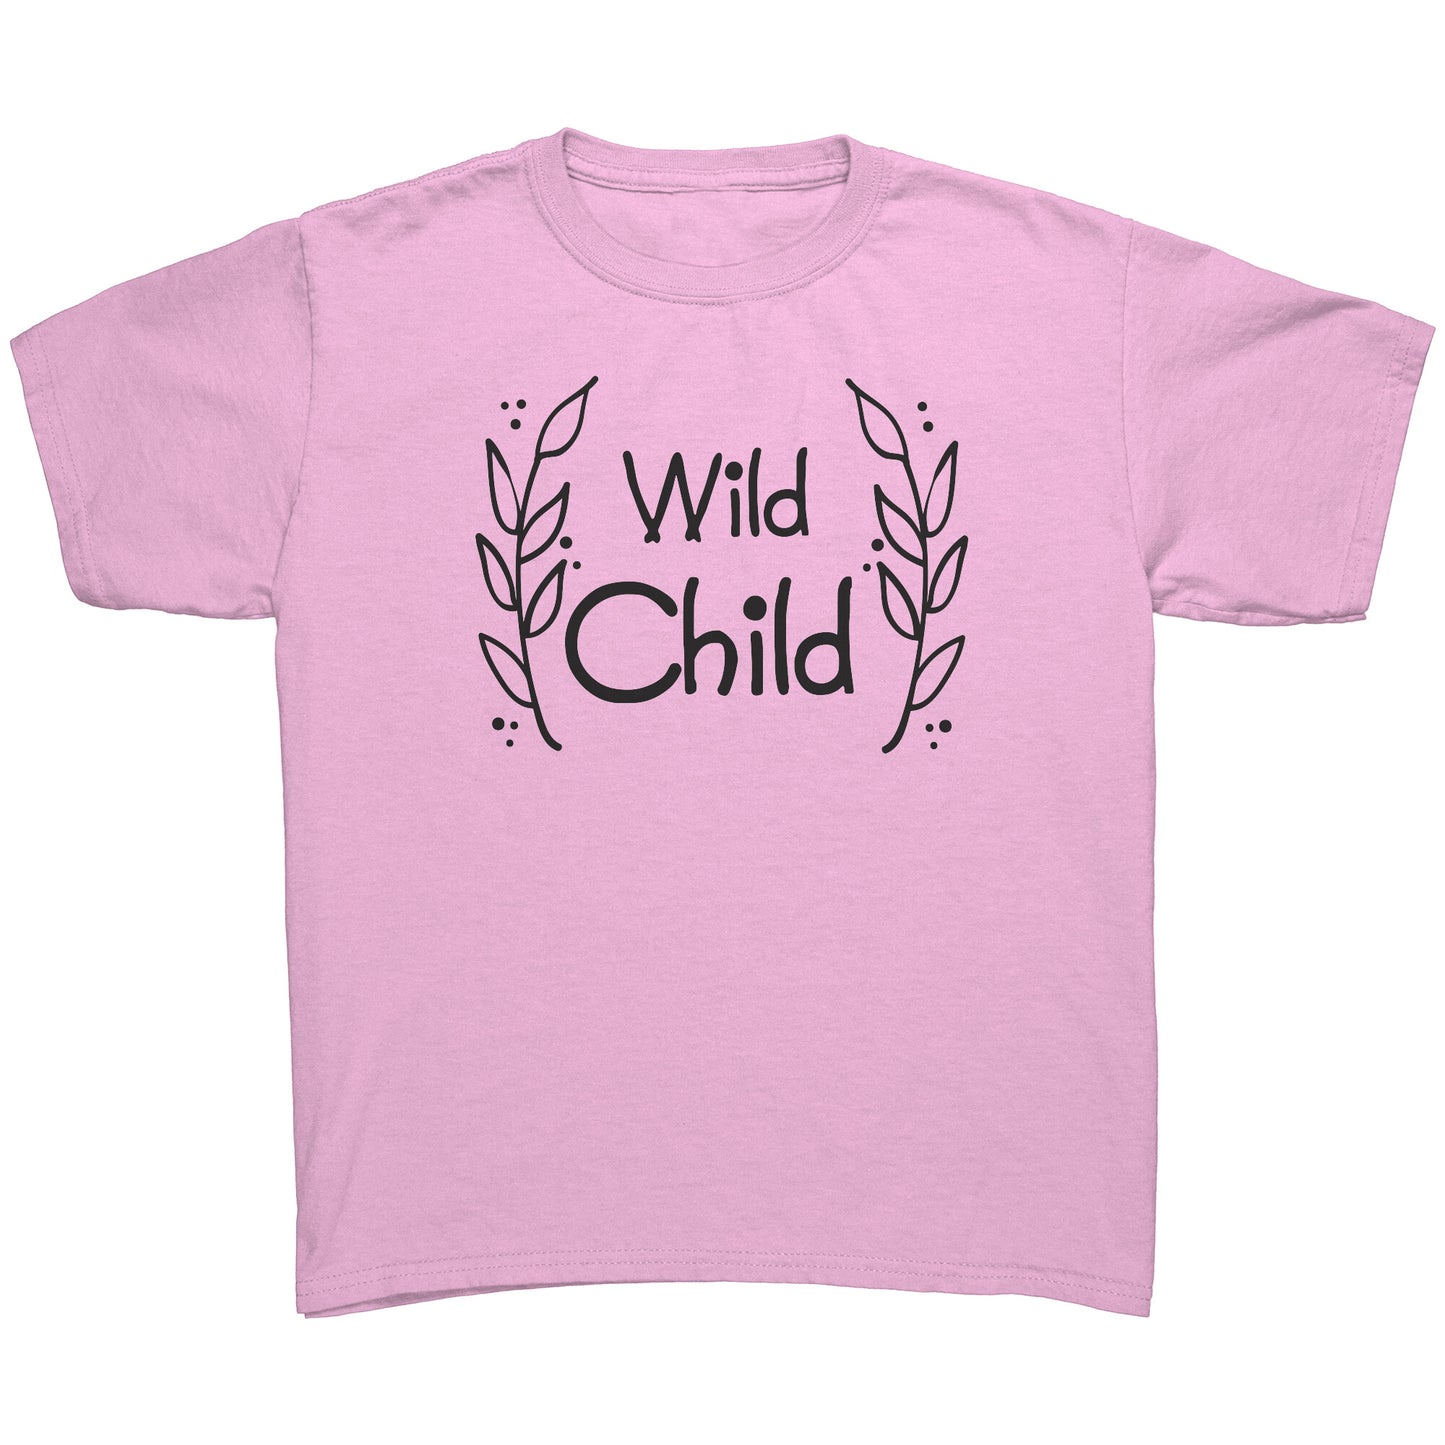 Wild Child Youth Shirt